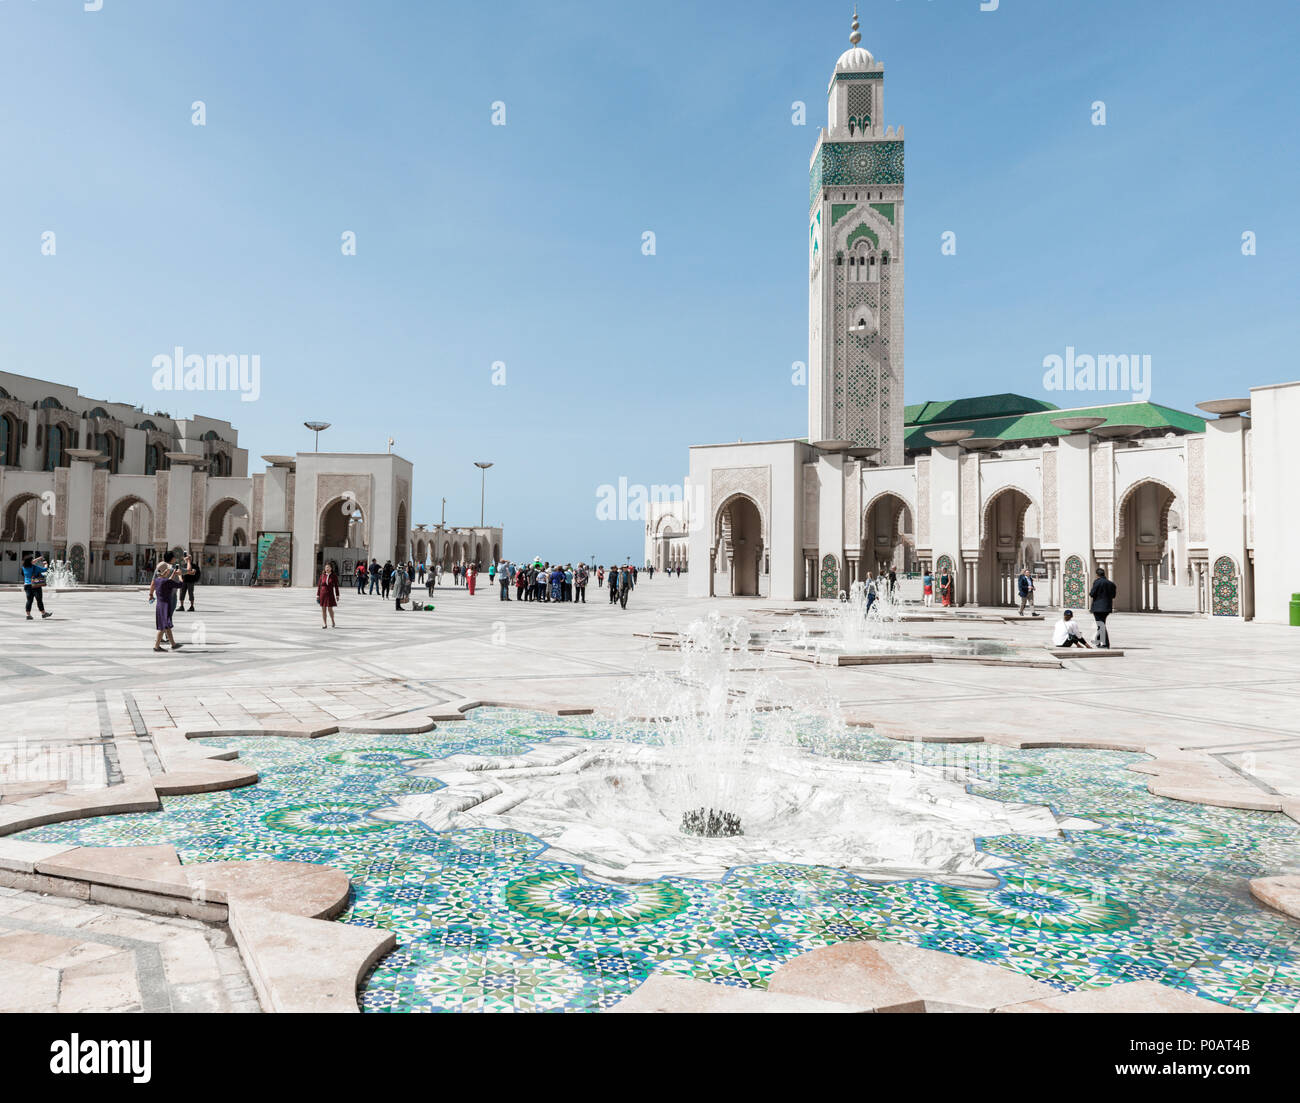 Brunnen, Hassan-II.-Moschee, die Grande Mosquée Hassan II., der maurischen Architektur, mit 210 m höchste Minarett der Welt, Casablanca Stockfoto